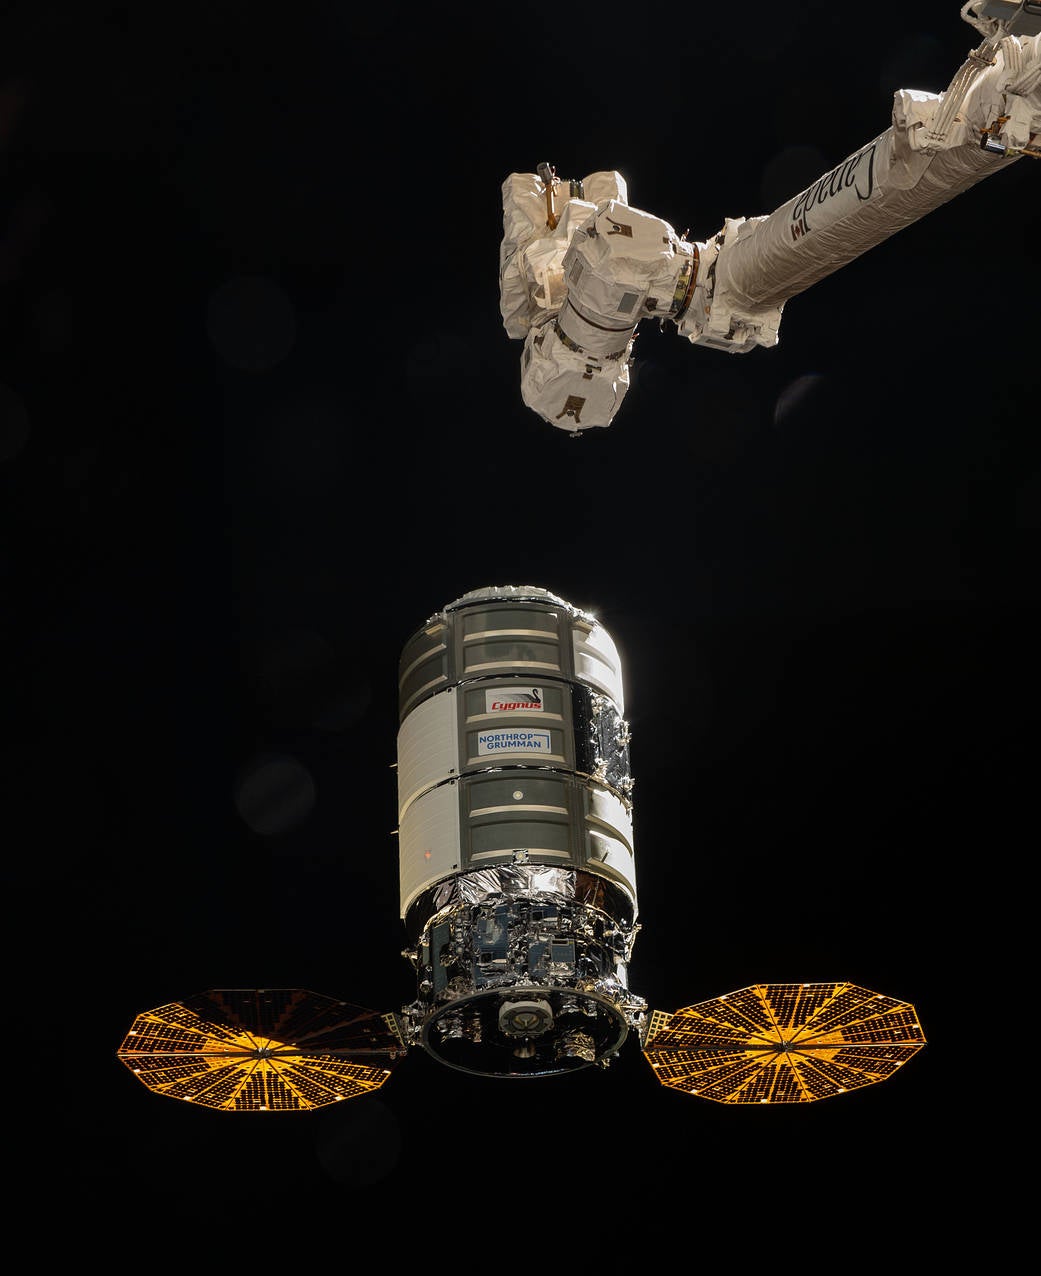 Northrop Grumman Cygnus resupply spacecraft